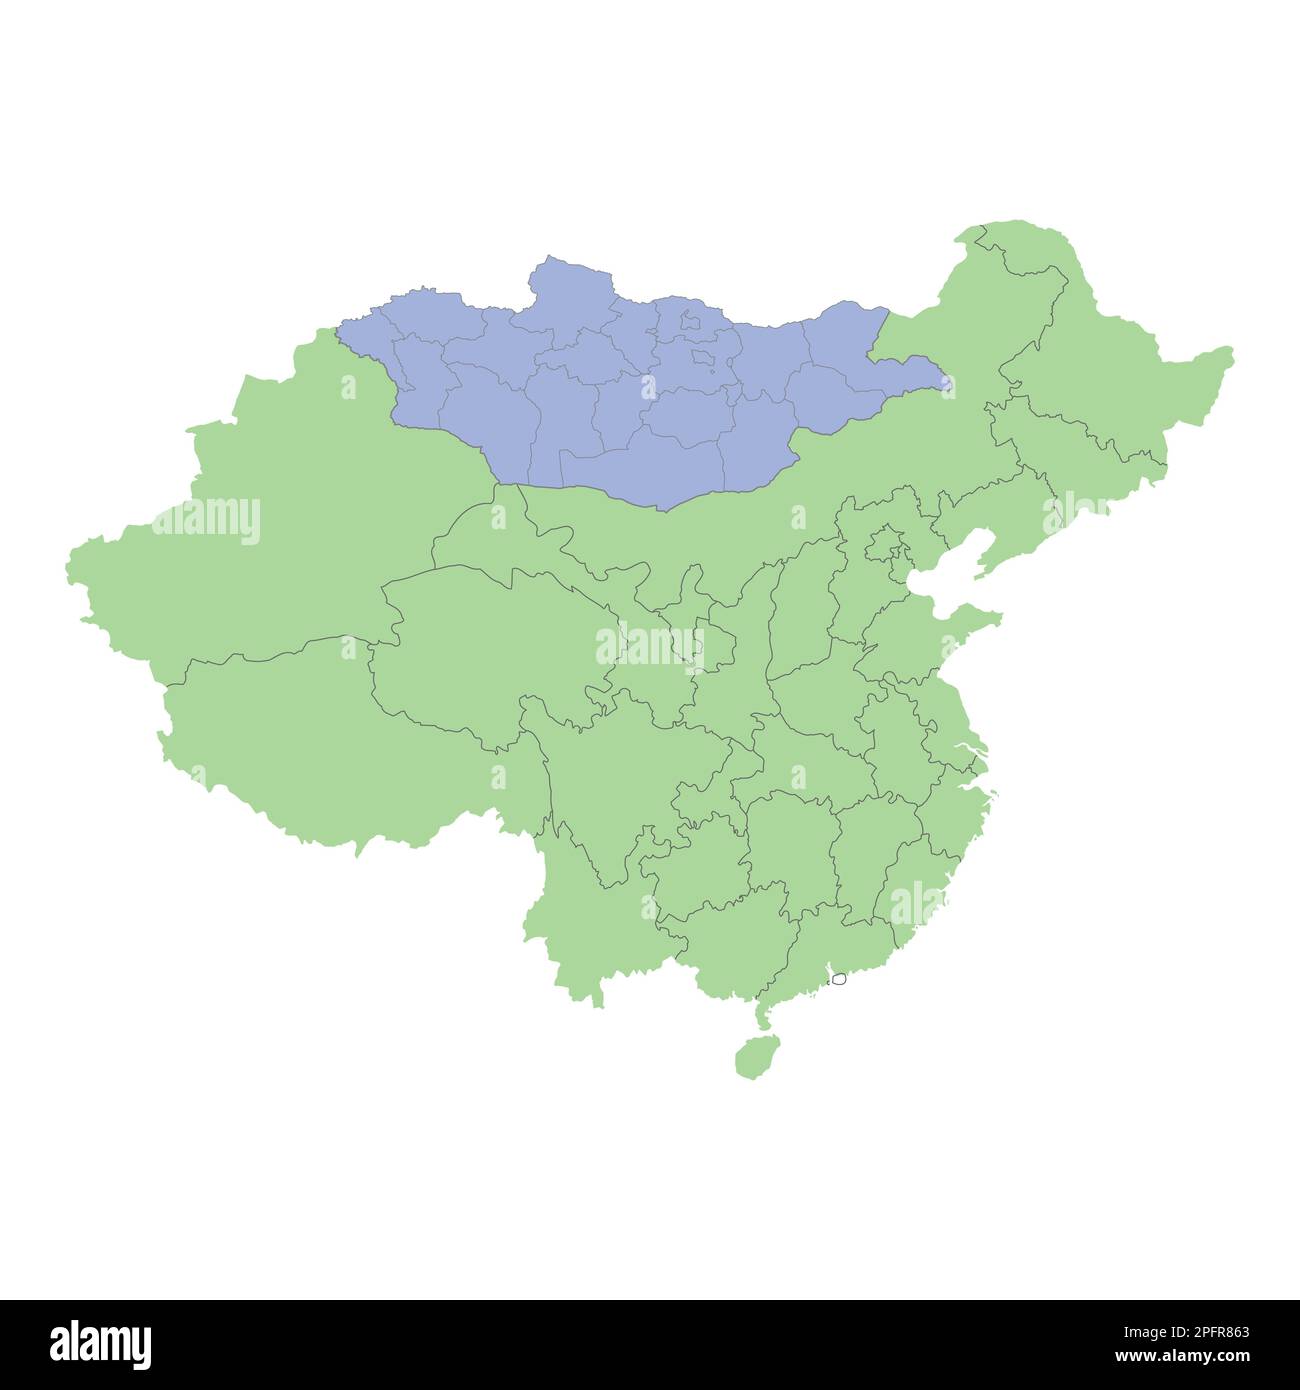 Mappa politica di alta qualità di Cina e Mongolia con i confini delle regioni o province. Illustrazione vettoriale Illustrazione Vettoriale